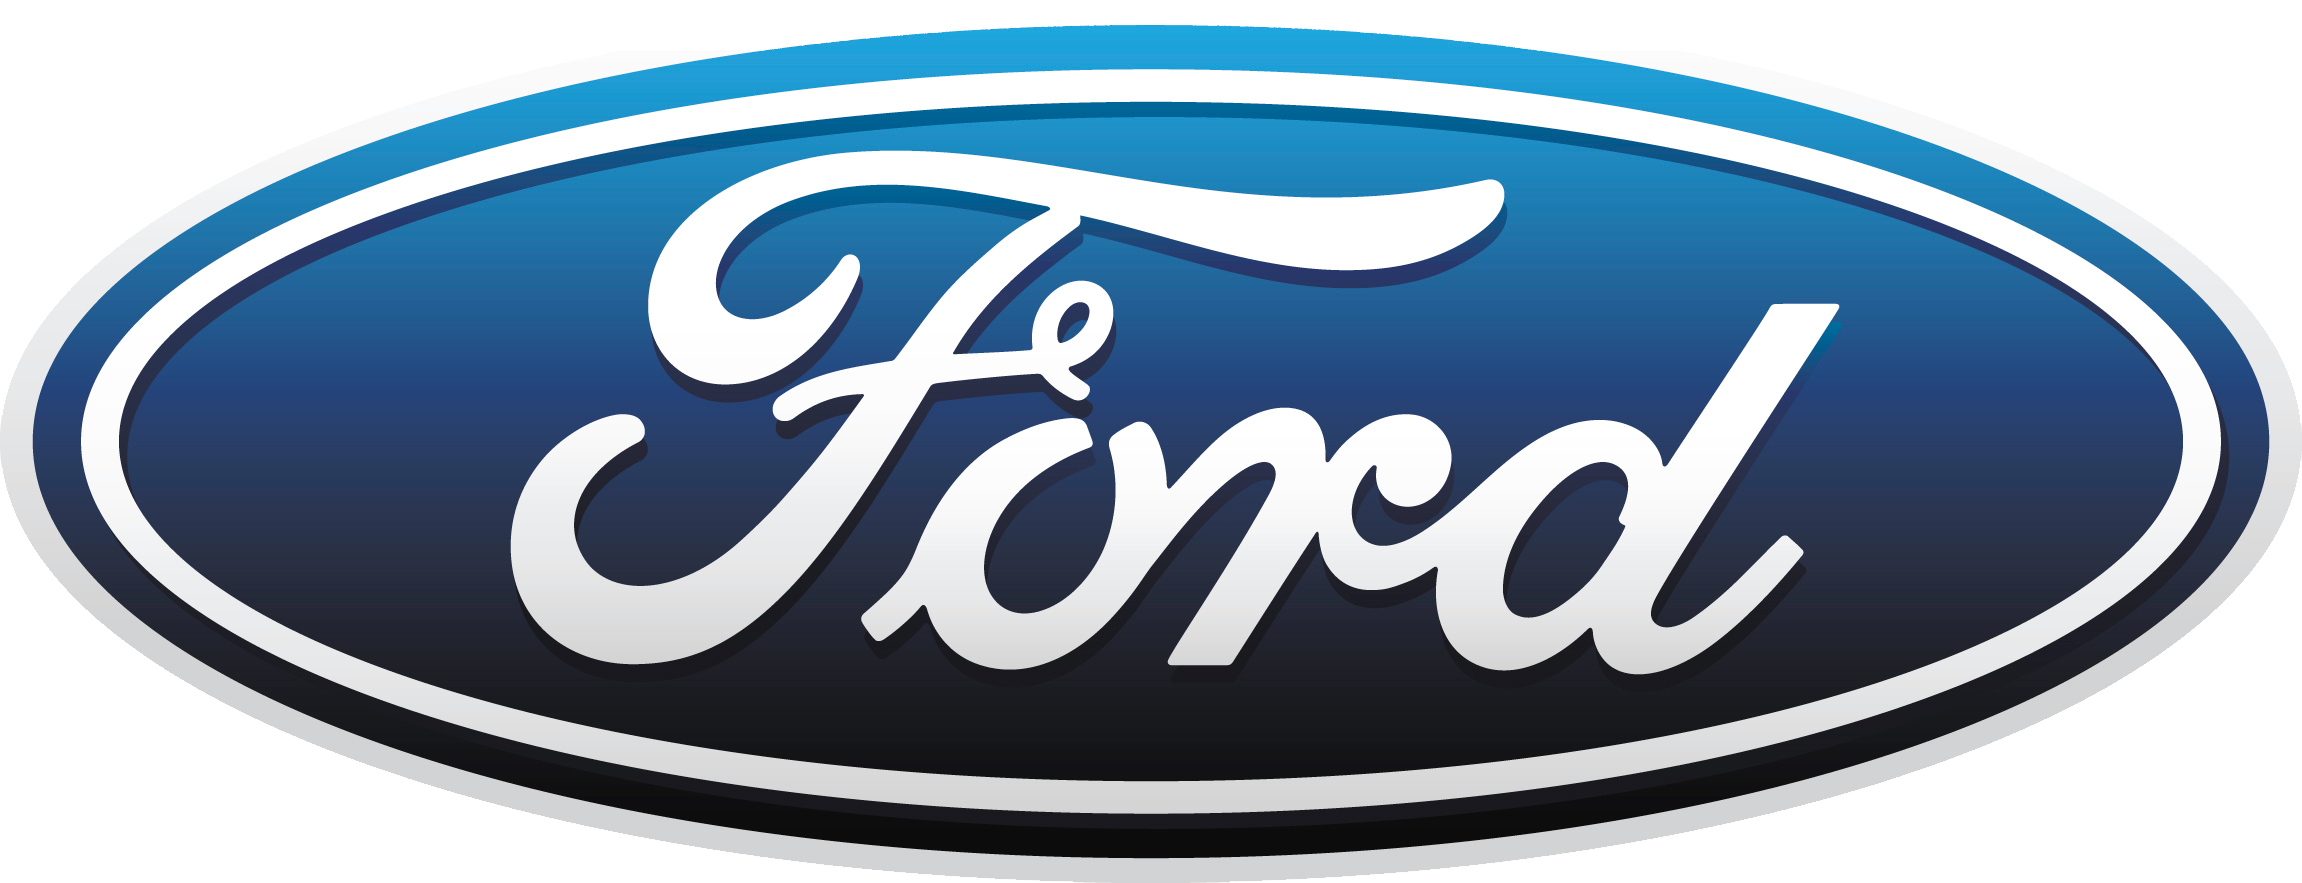 Выкуп автомобилей Ford